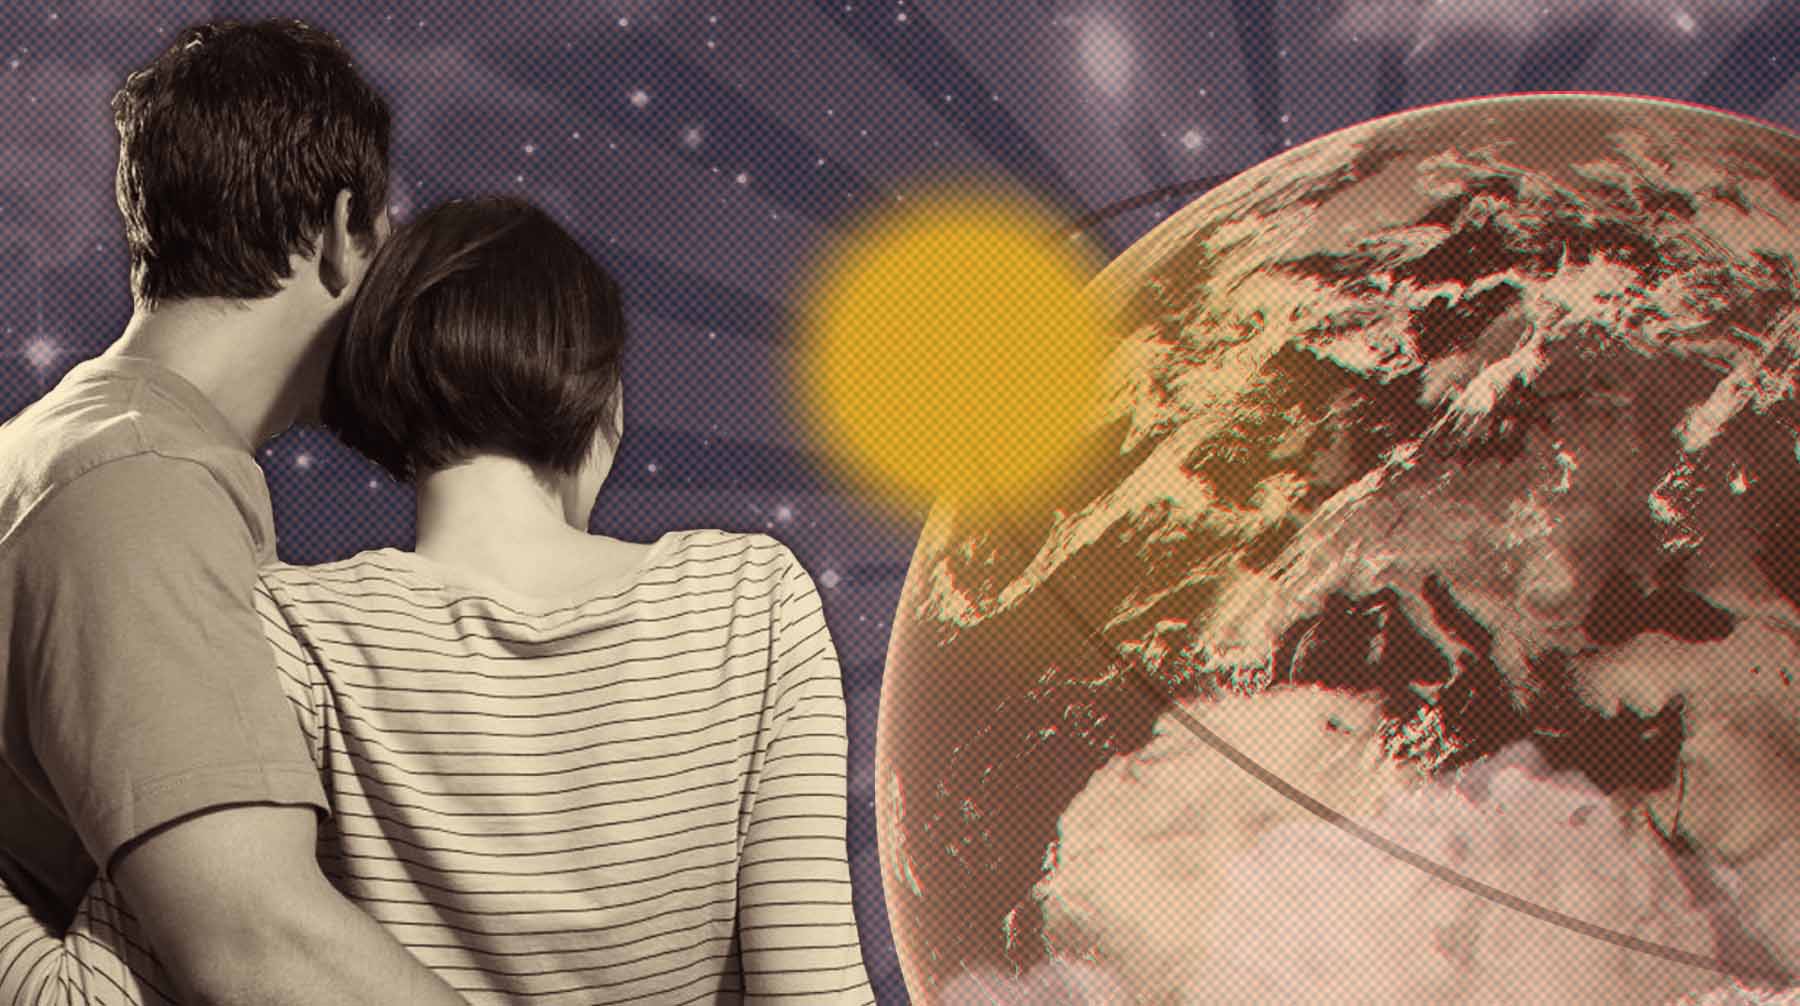 Dailystorm - ВЦИОМ: 35% россиян считают, что Солнце вращается вокруг Земли